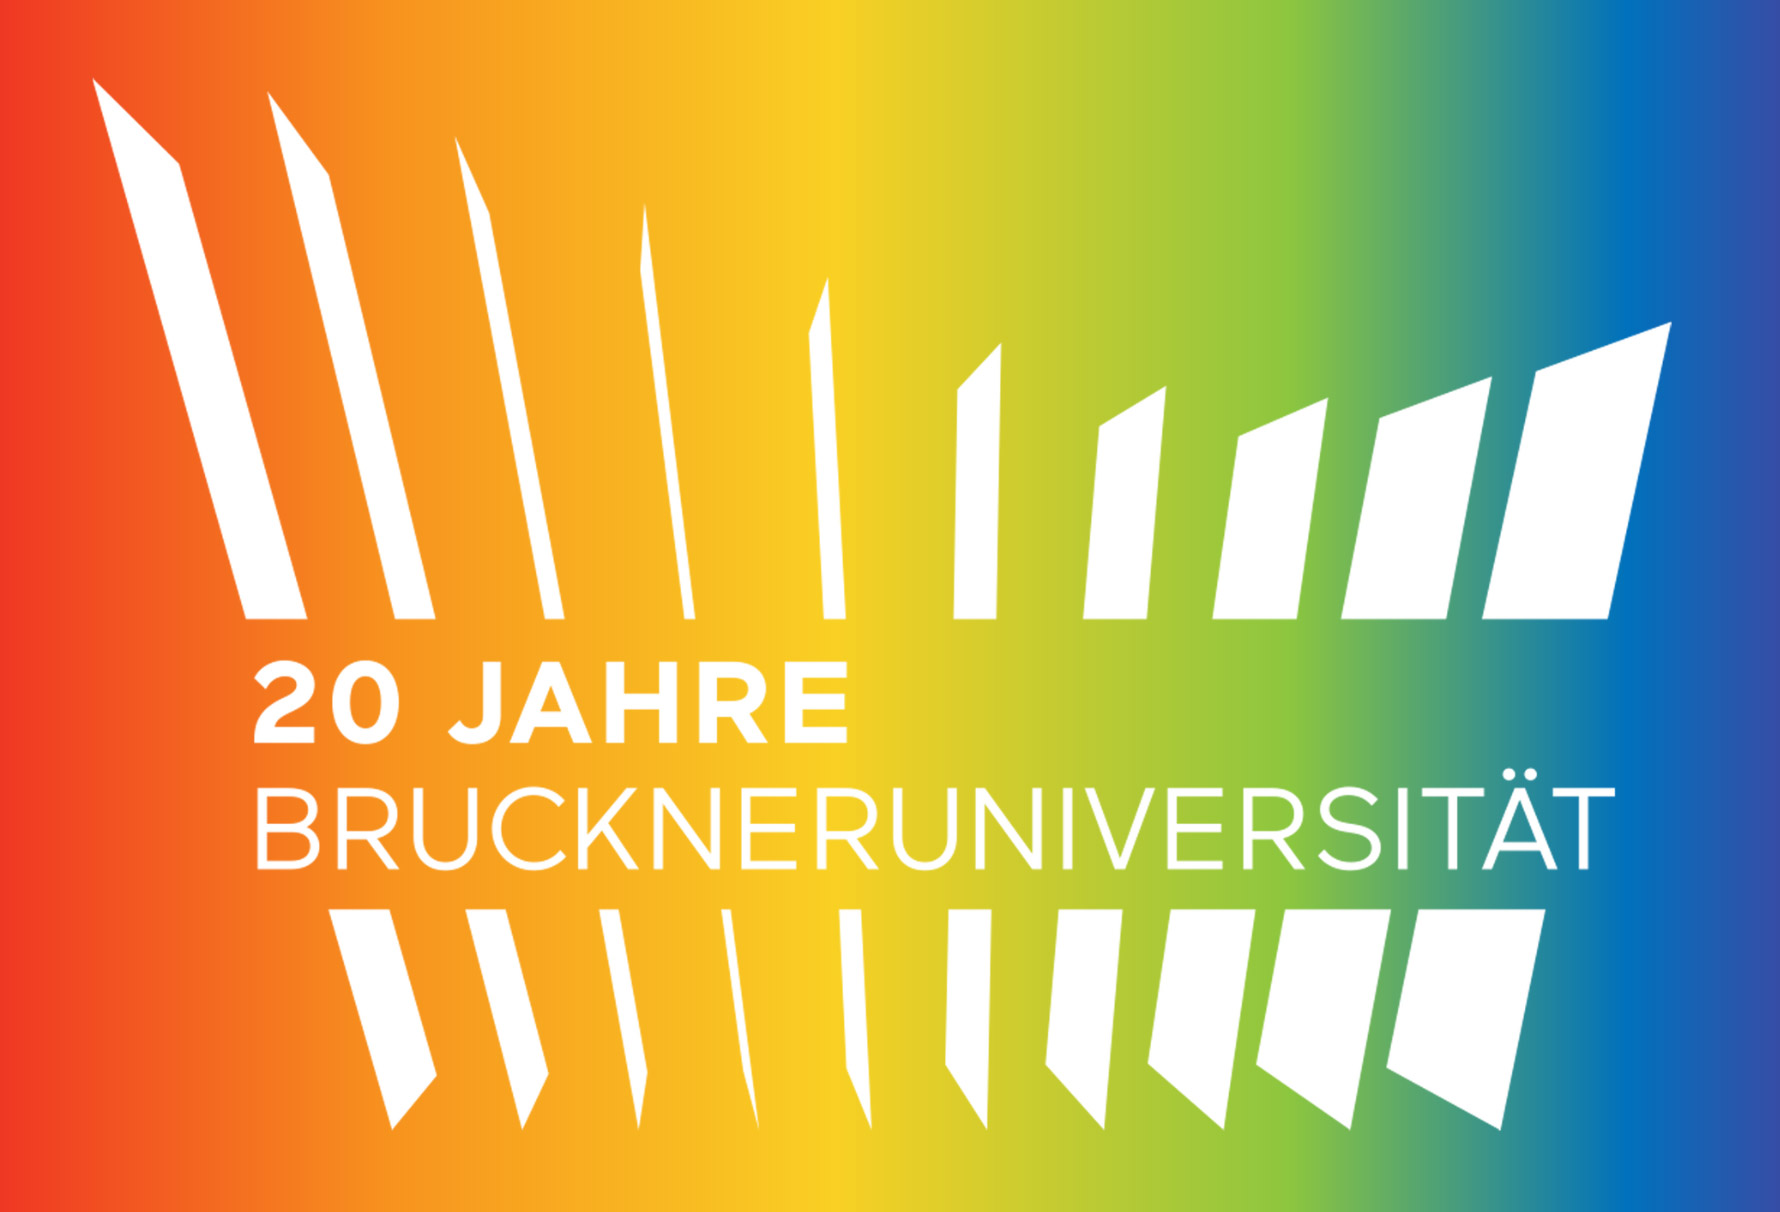 15 Jahre Bruckneruniversität